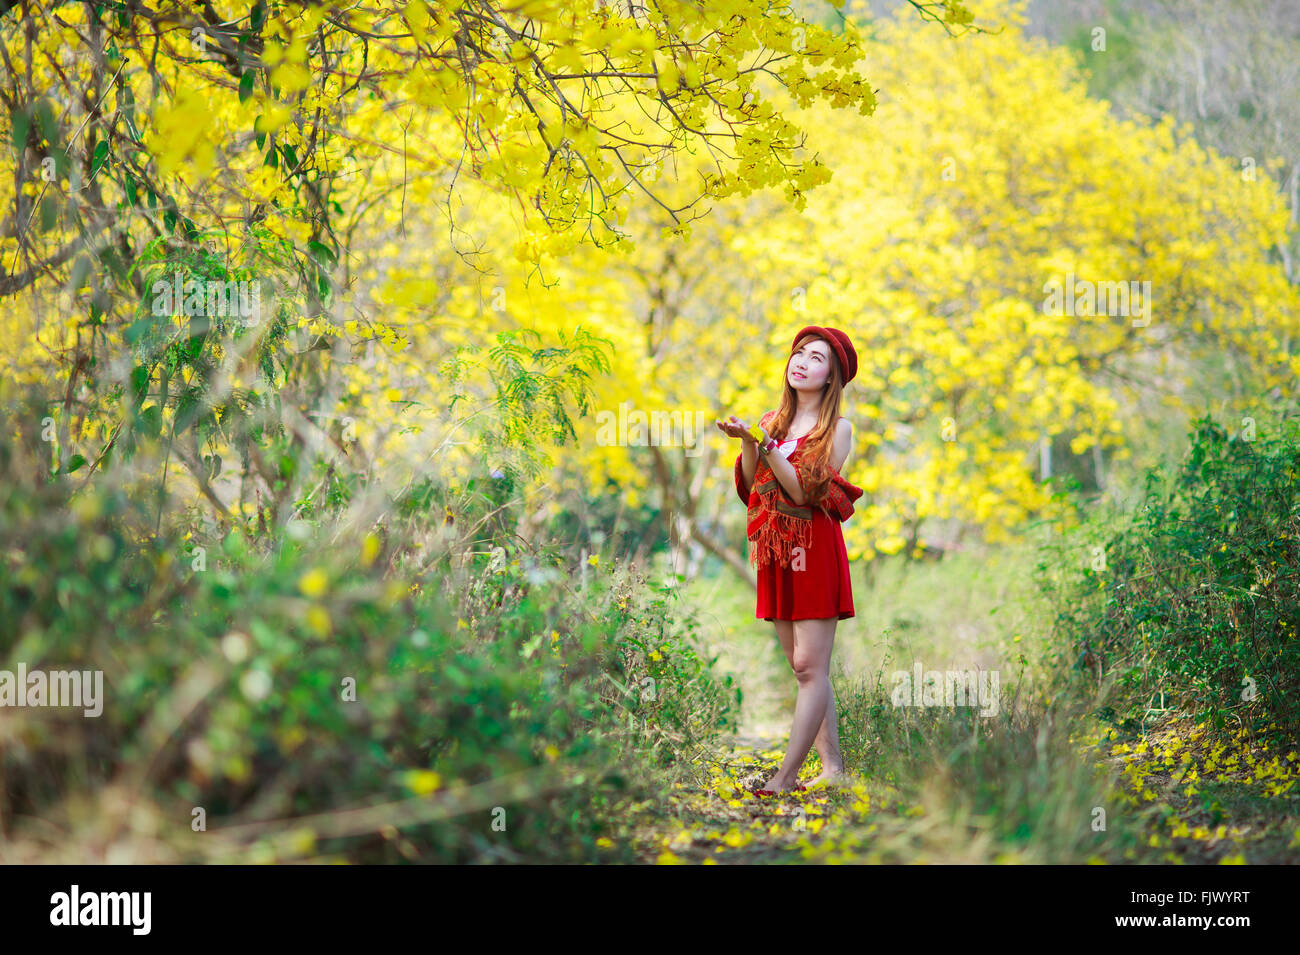 Porträt von einem schönen Mädchen unter den gelben Blüten in der Natur, Thailand, Asien. Stockfoto